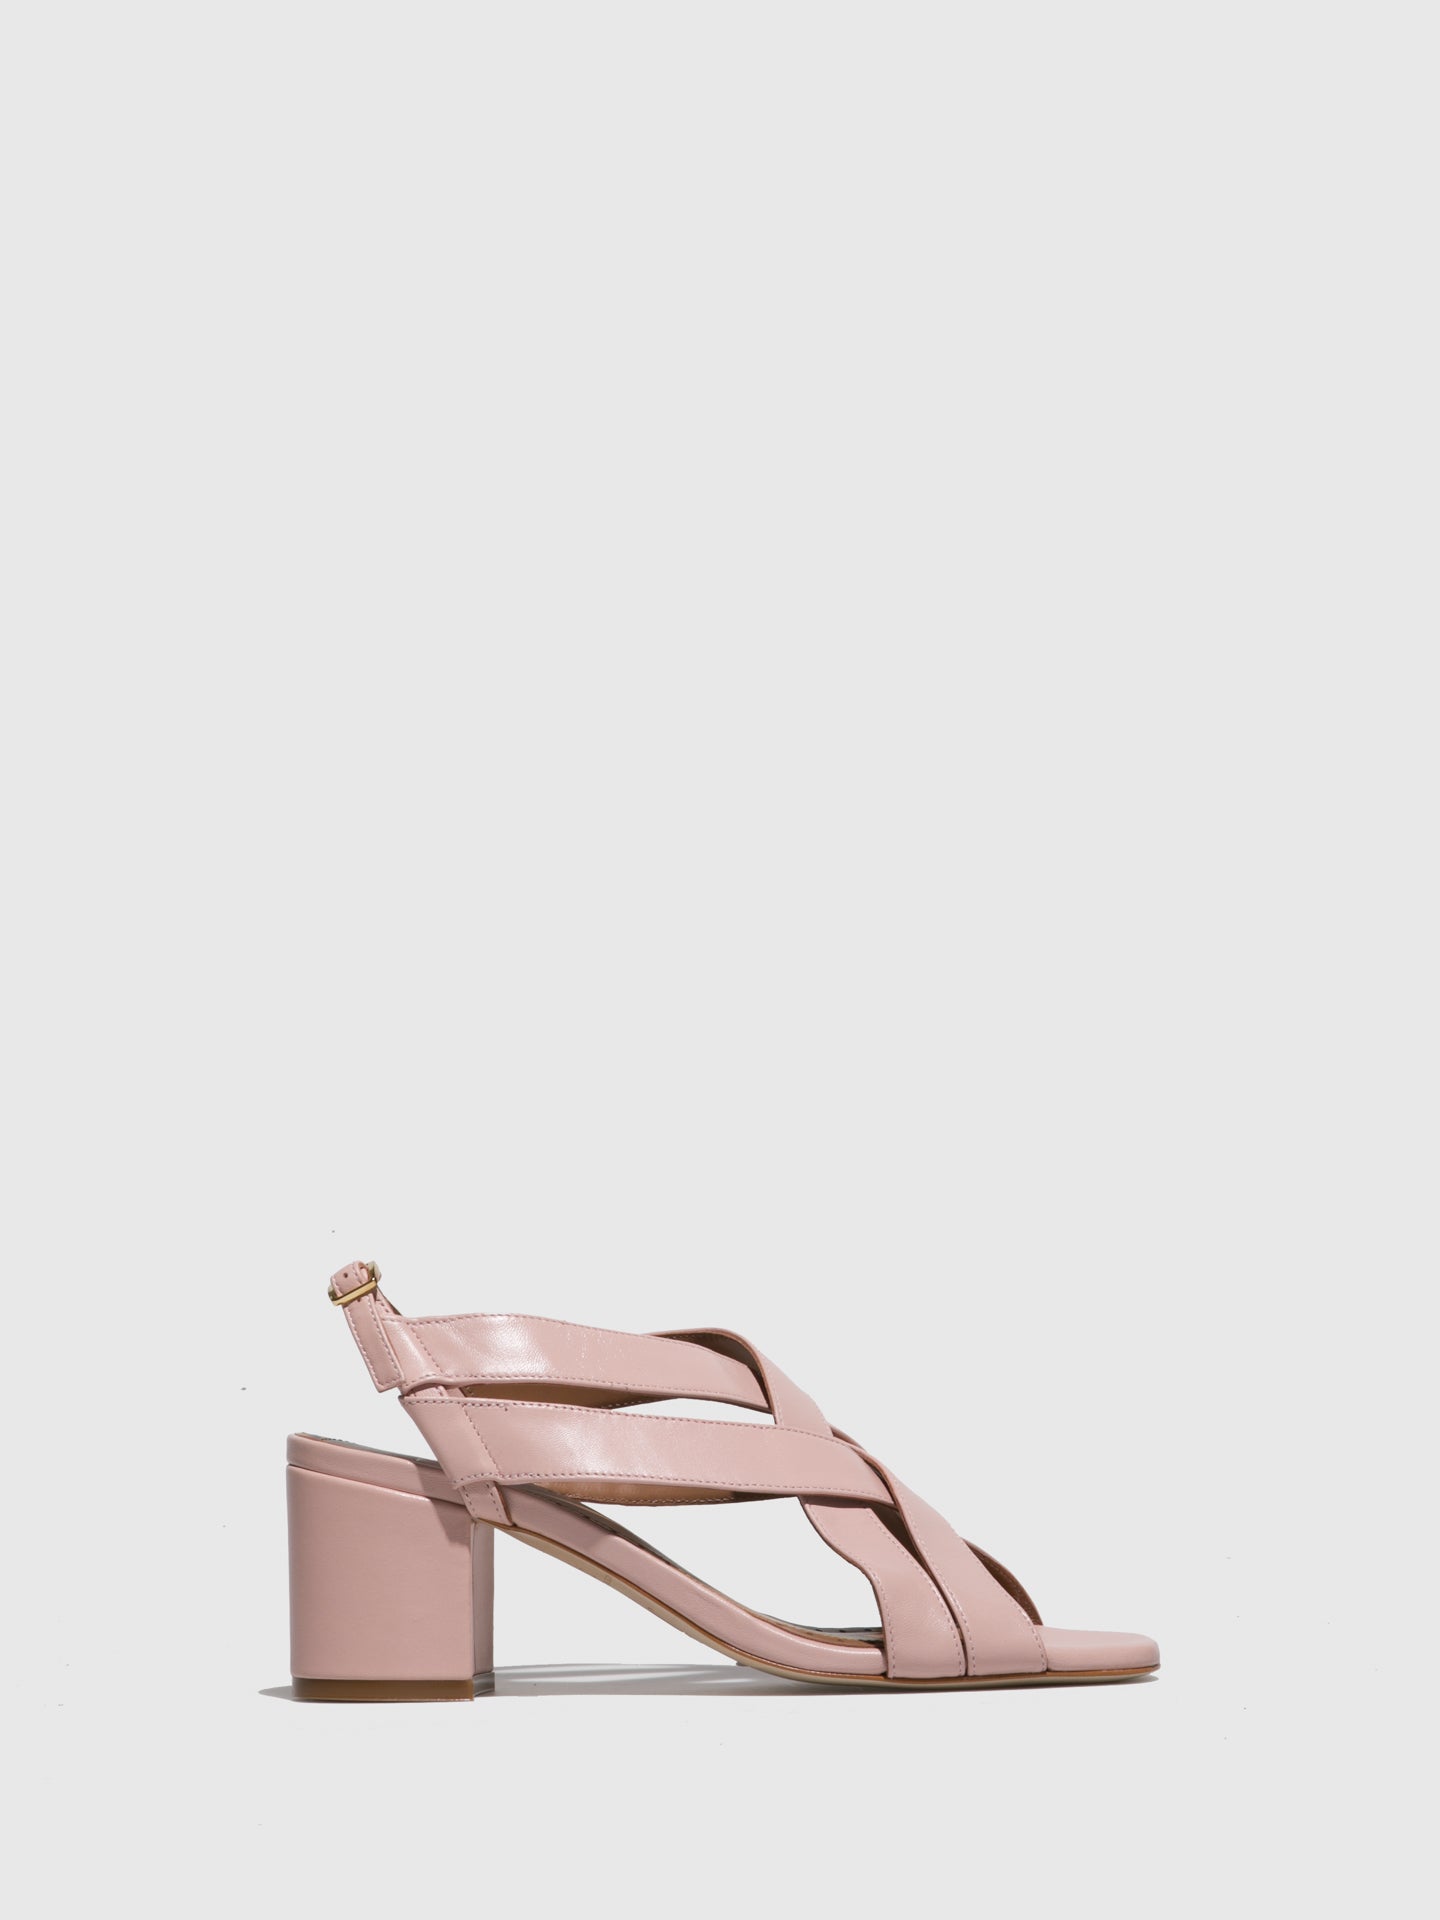 JJ Heitor Pink Leather Heel Sandals